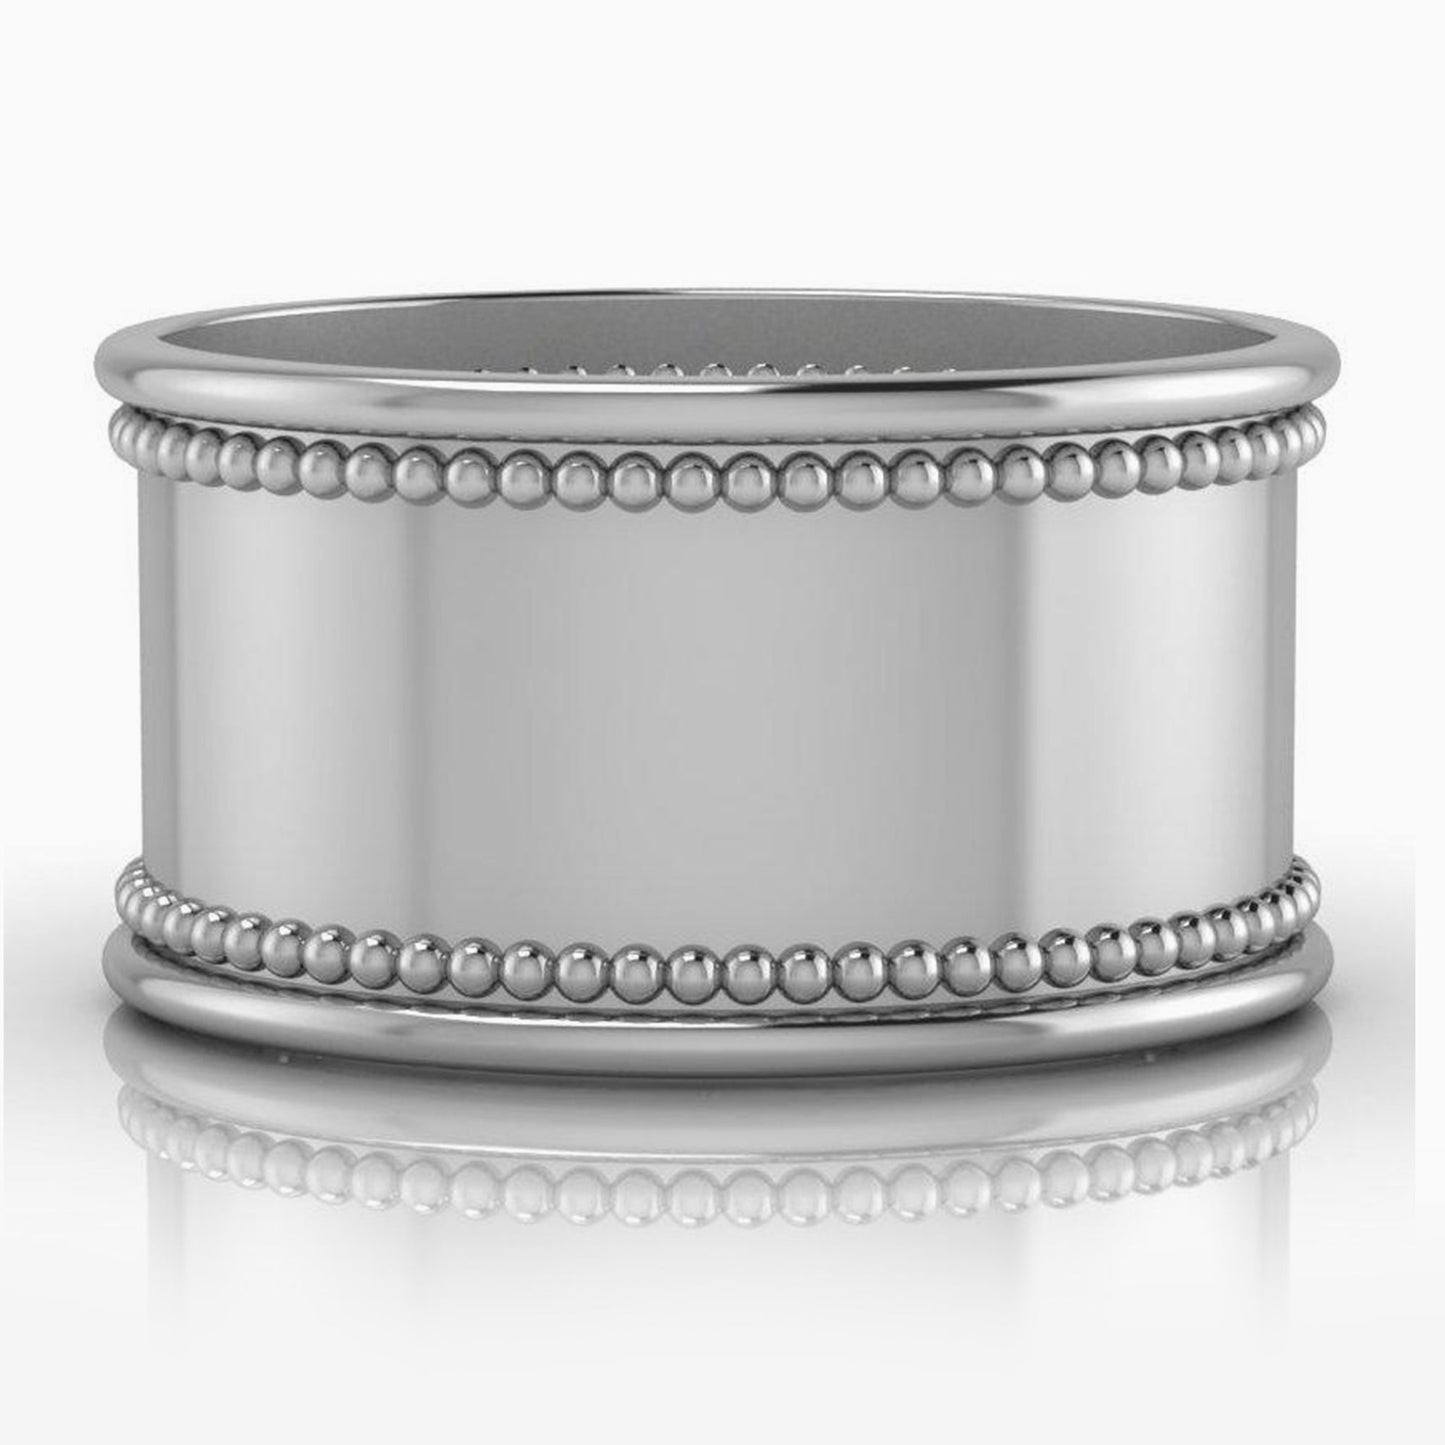 Beaded Silver-plate Napkin Rings by Krysaliis - Set of 4